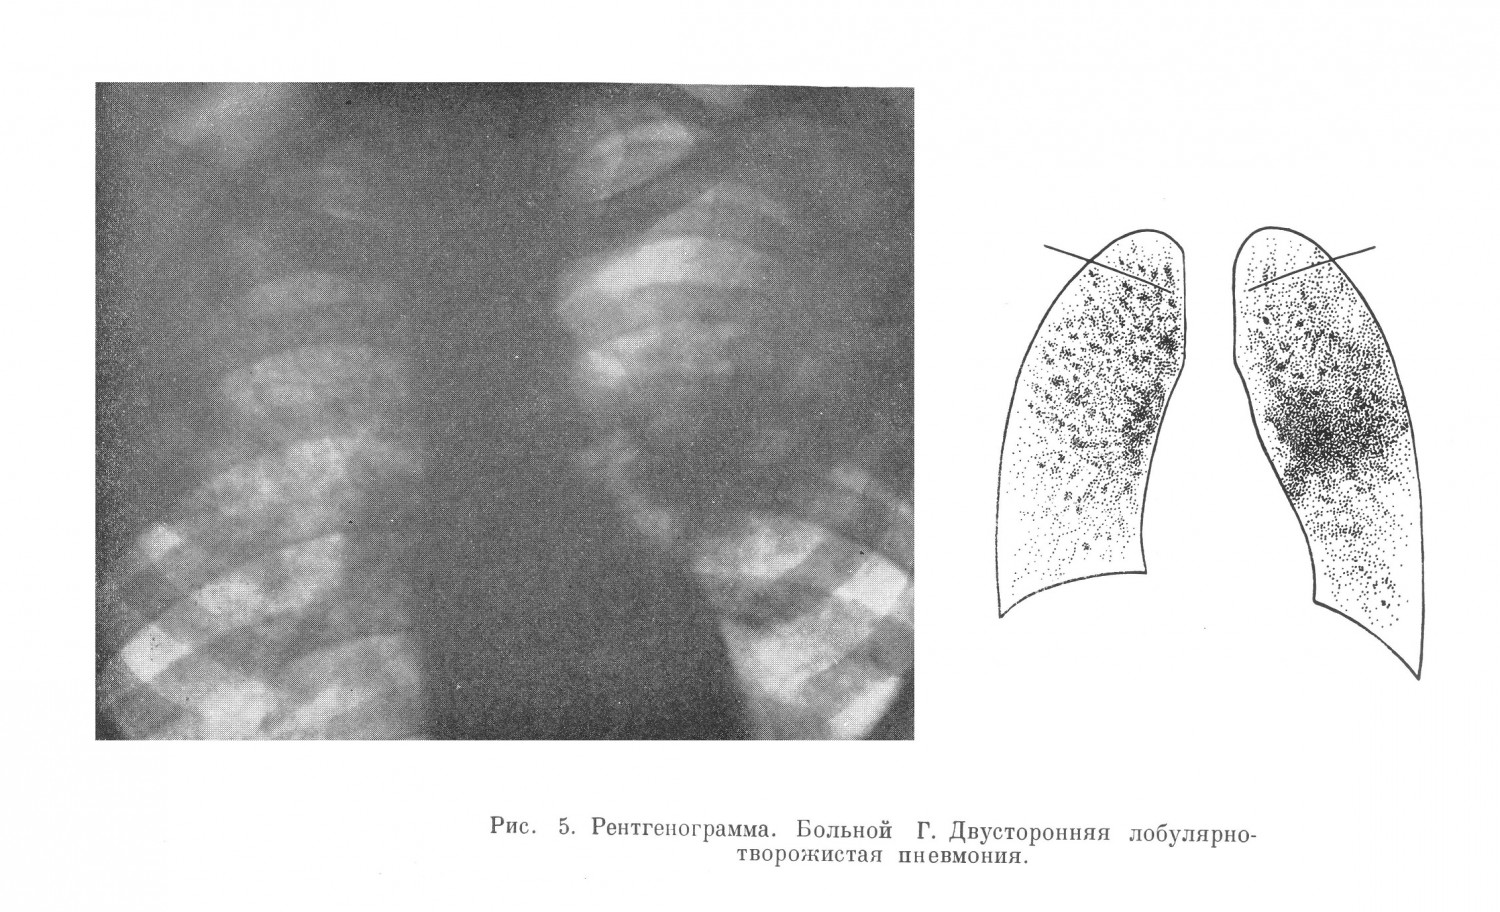 При рентгенологическом исследовании обнаружена типичная картина далеко зашедшей двусторонней лобулярно-творожистой пневмонии со множественными свежими кавернами